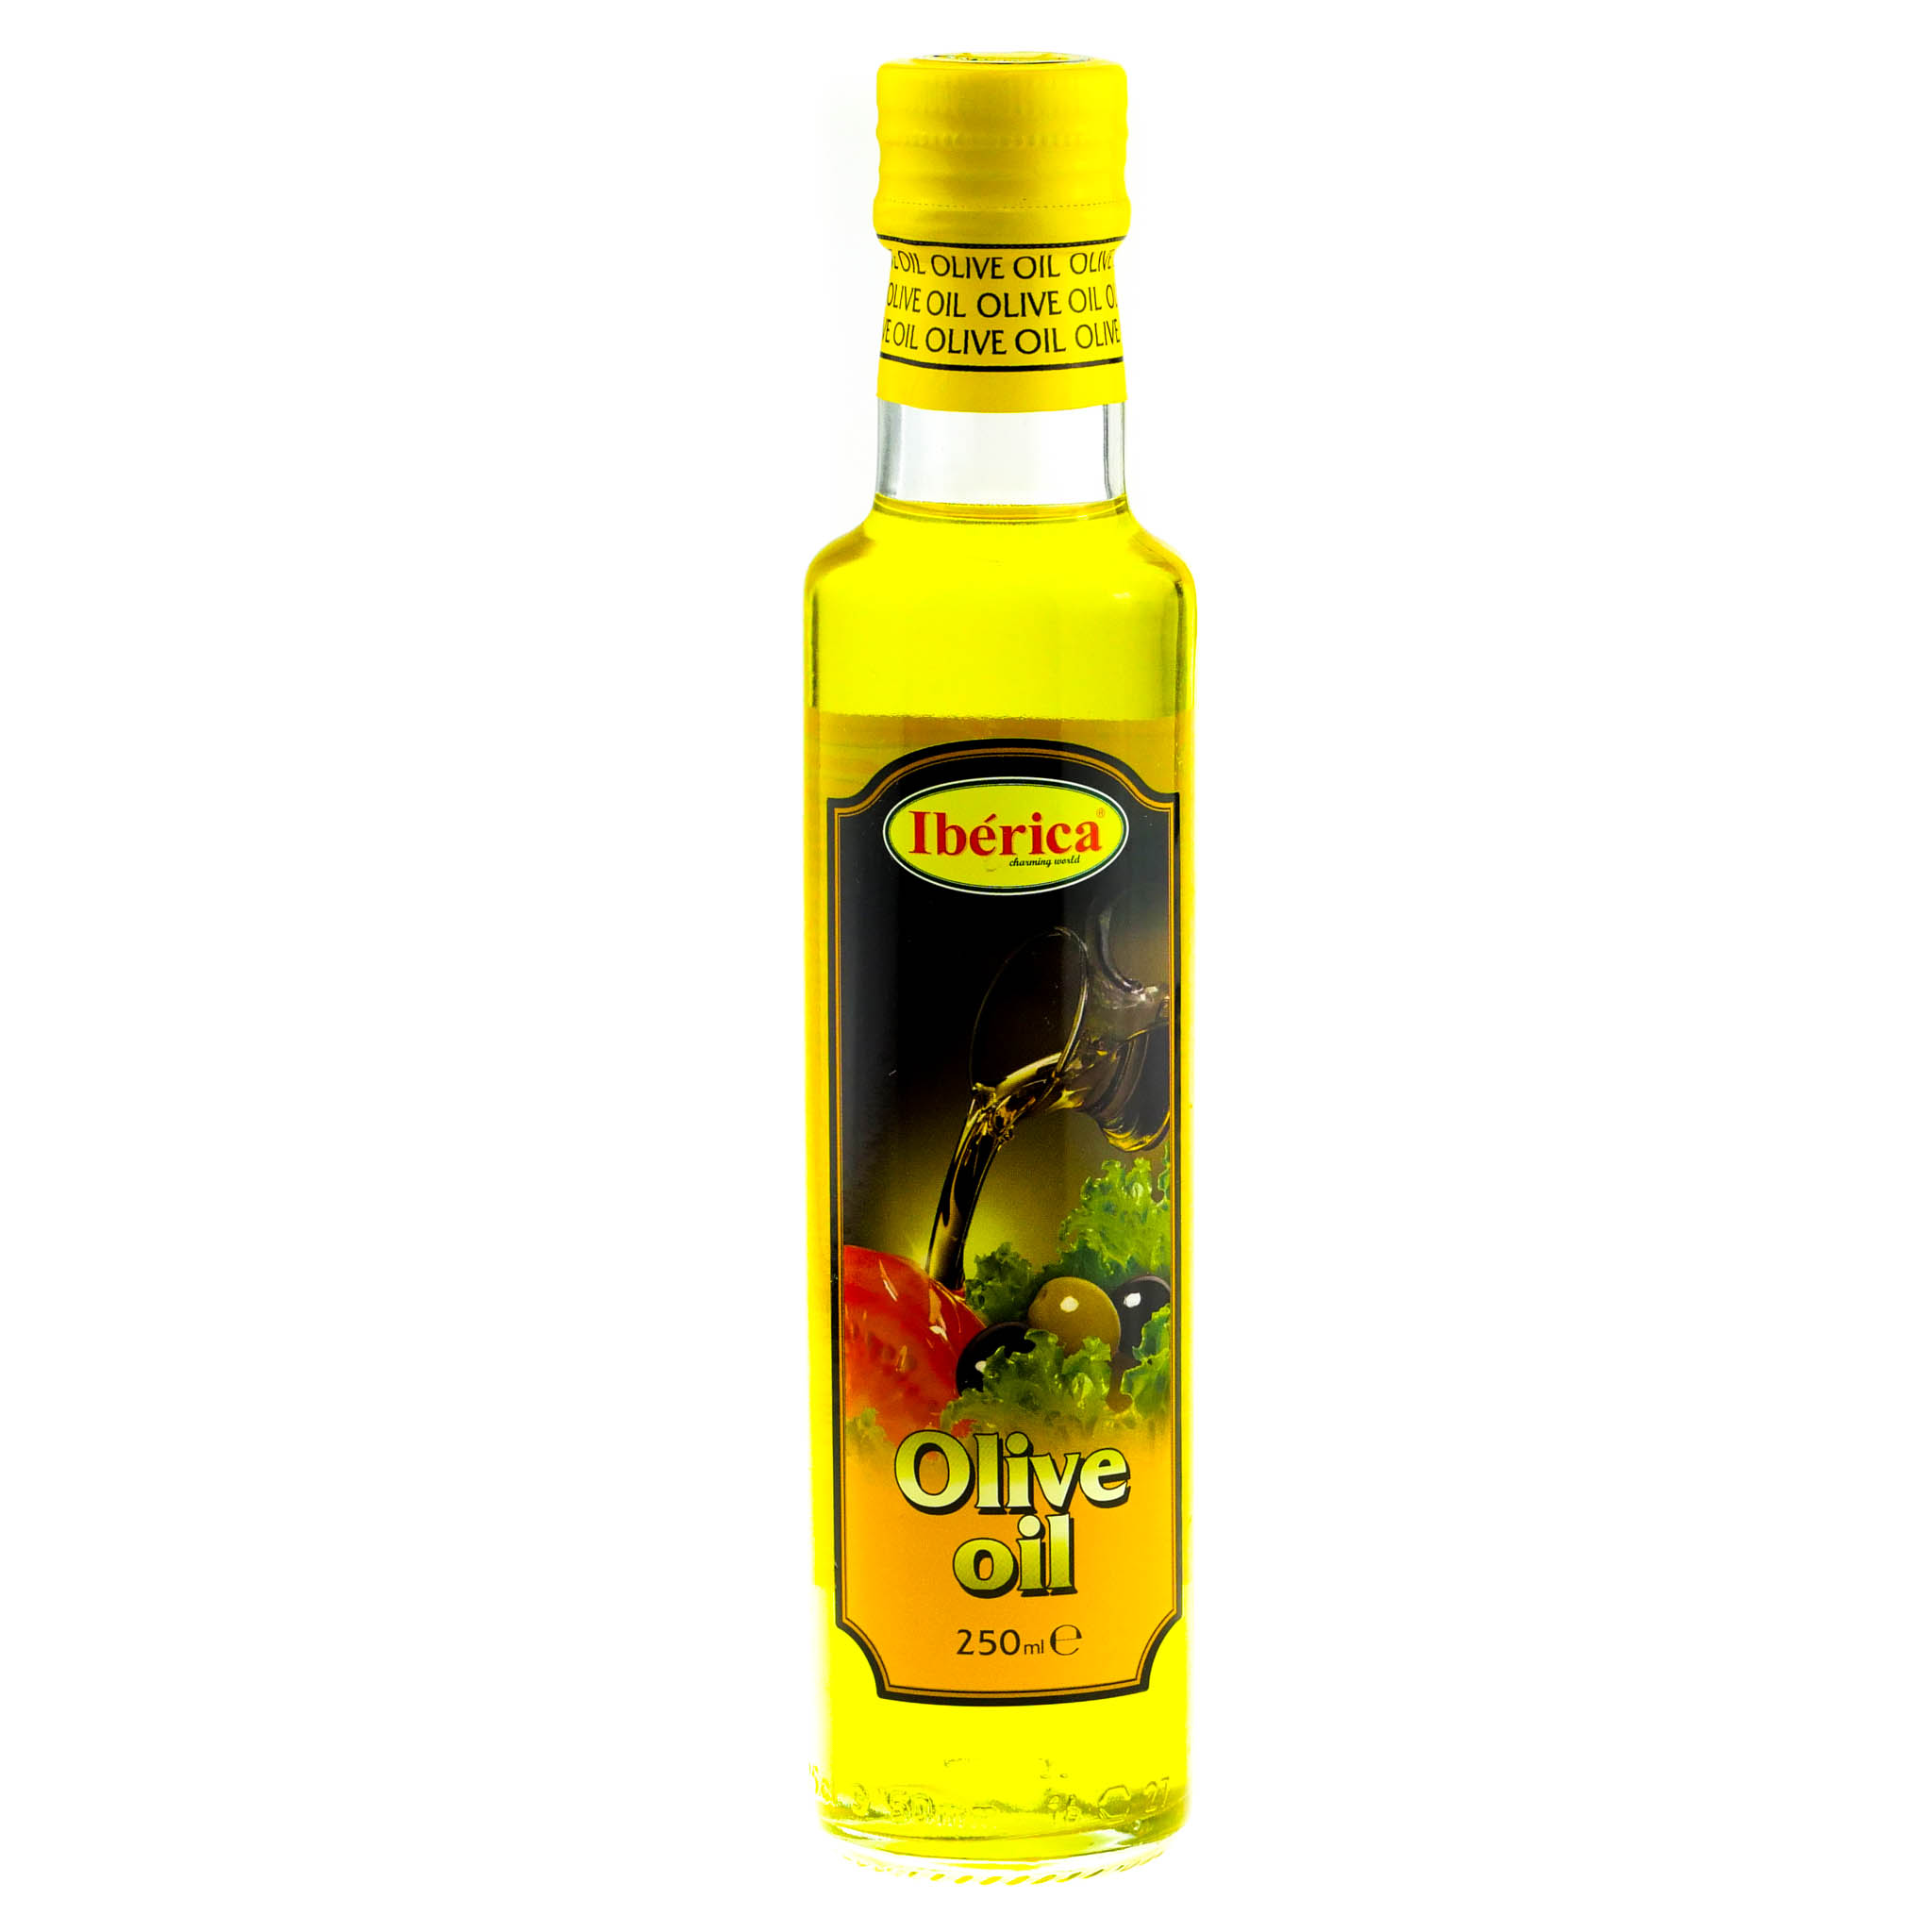 Марки оливкового масла. Иберика оливковое масло 250 ml. Рафинированное оливковое масло Иберика. Оливковое масло "Иберика" 0.25л нерафинированное. Olive Oil масло оливковое 250.